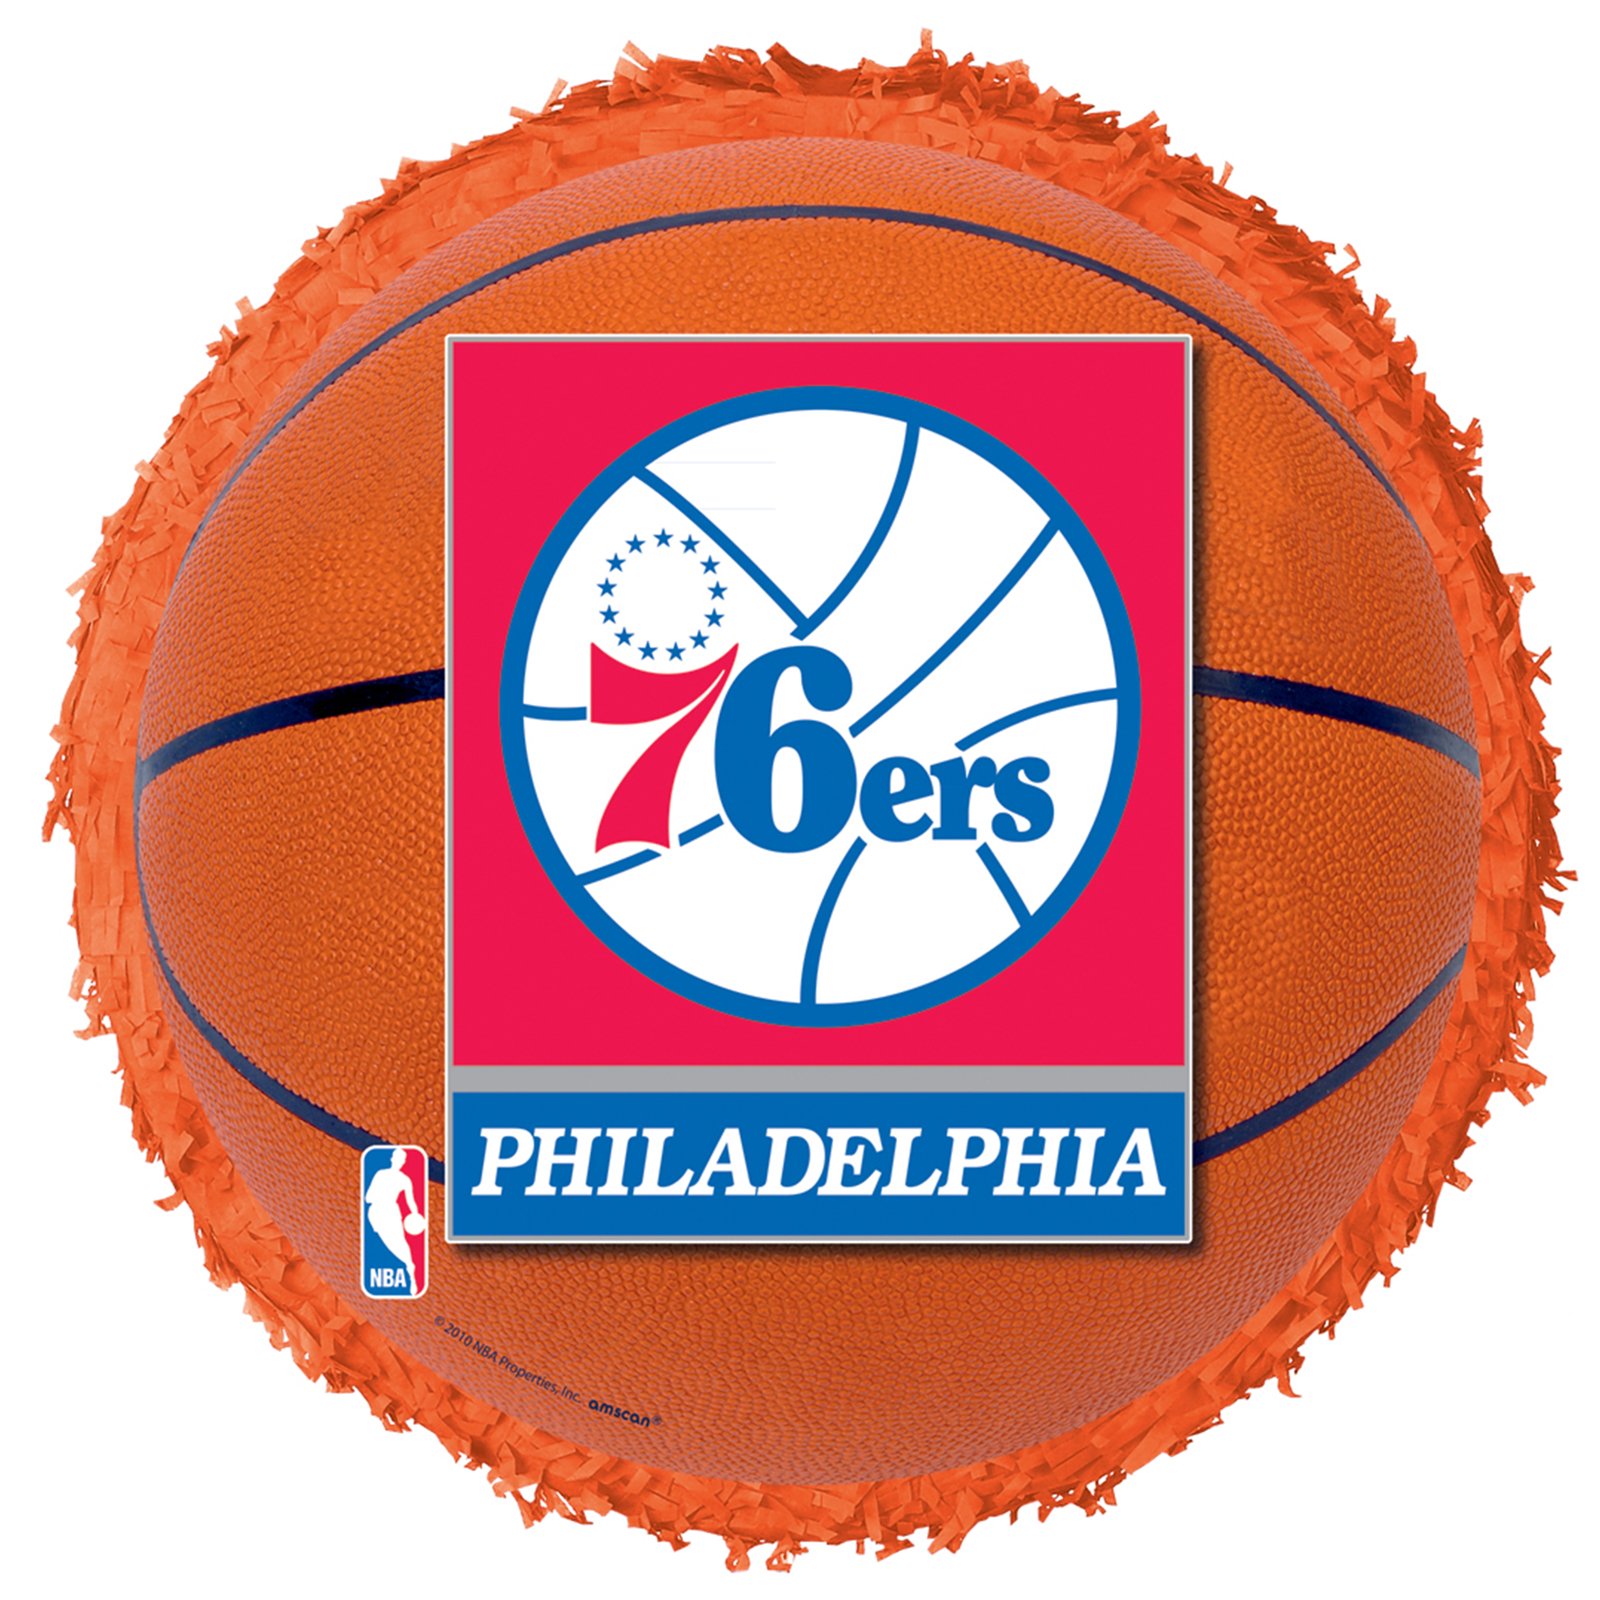 Philadelphia 76ers Basketball - Round Pinata